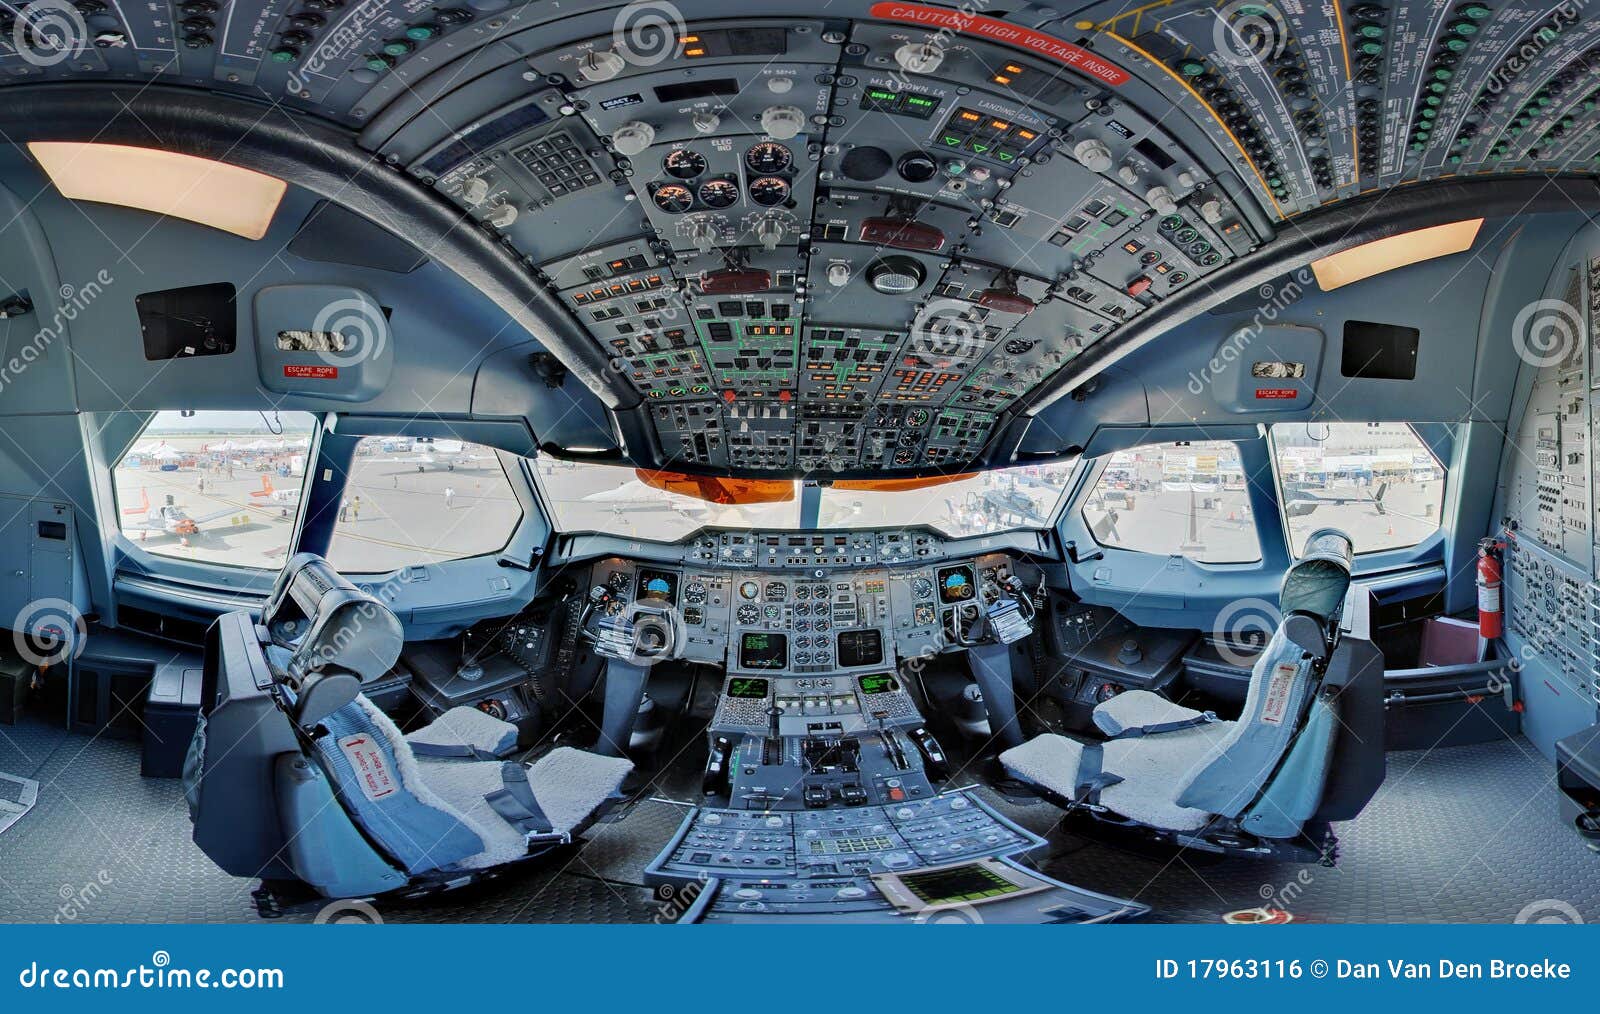 a300 jetliner cockpit